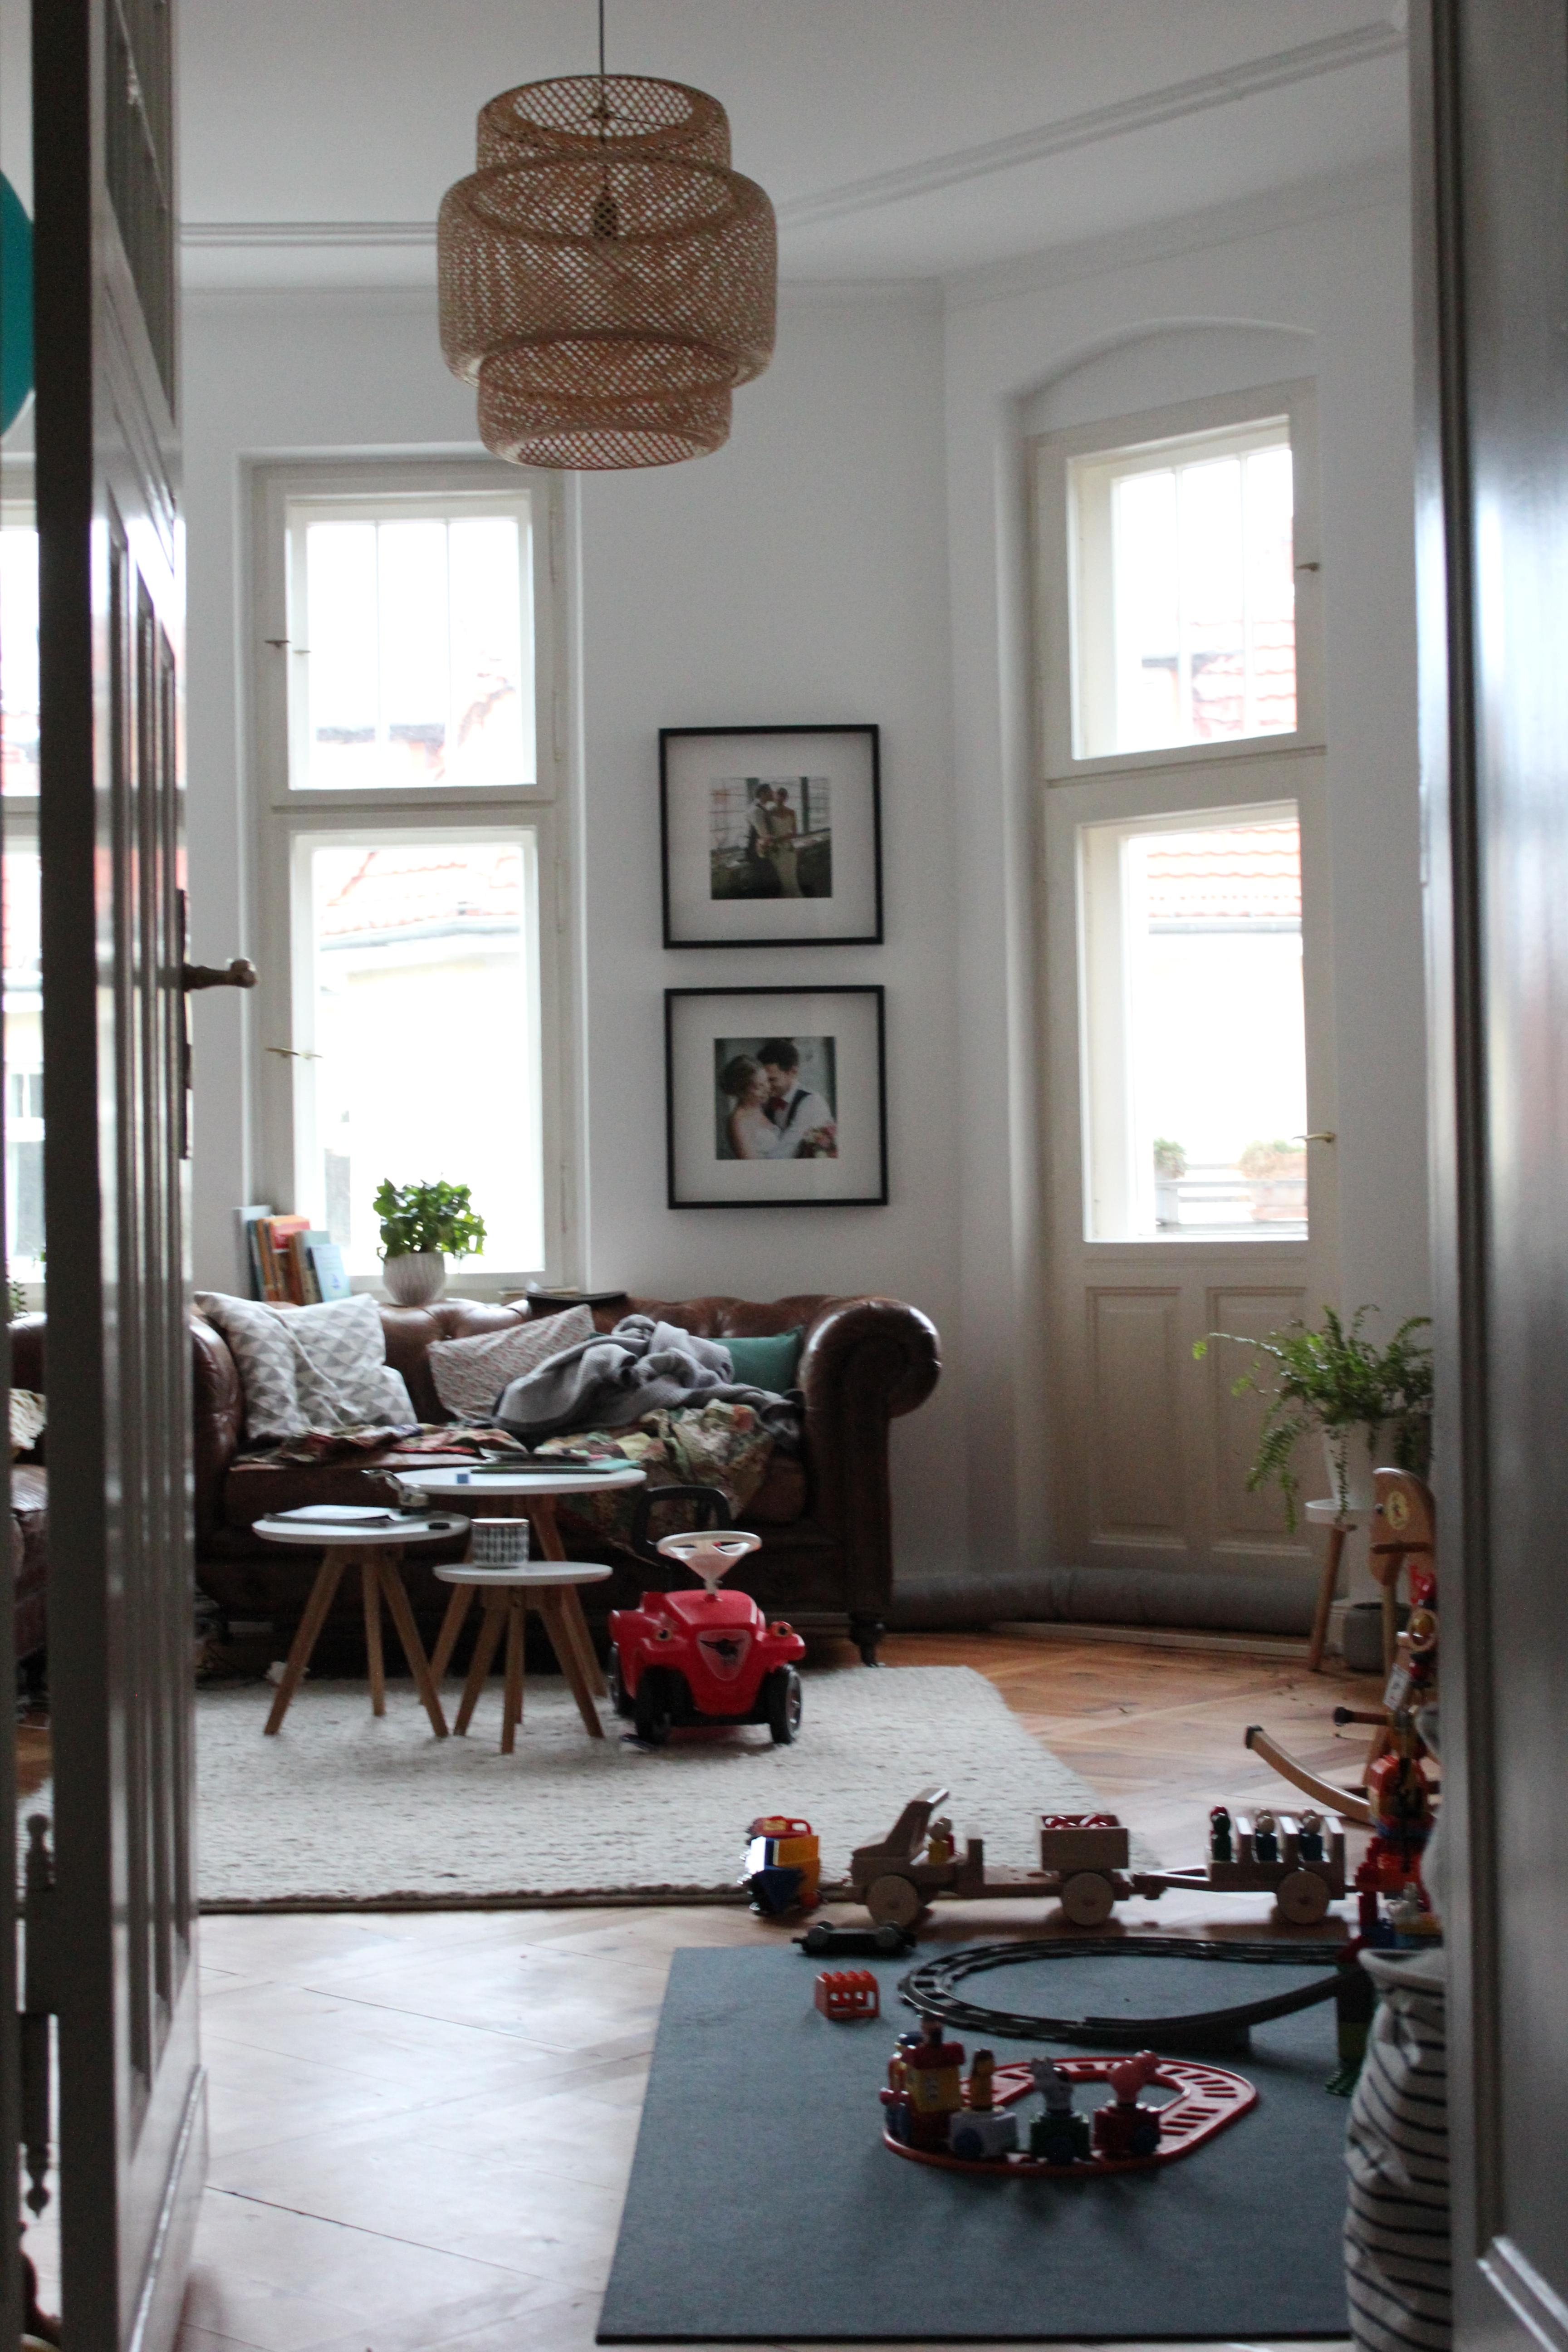 Hab mich gestern über den Blick ins Wohnzimmer gefreut - schönes Licht und überall Spielzeug :) #wohnzimmer #spieleecke 